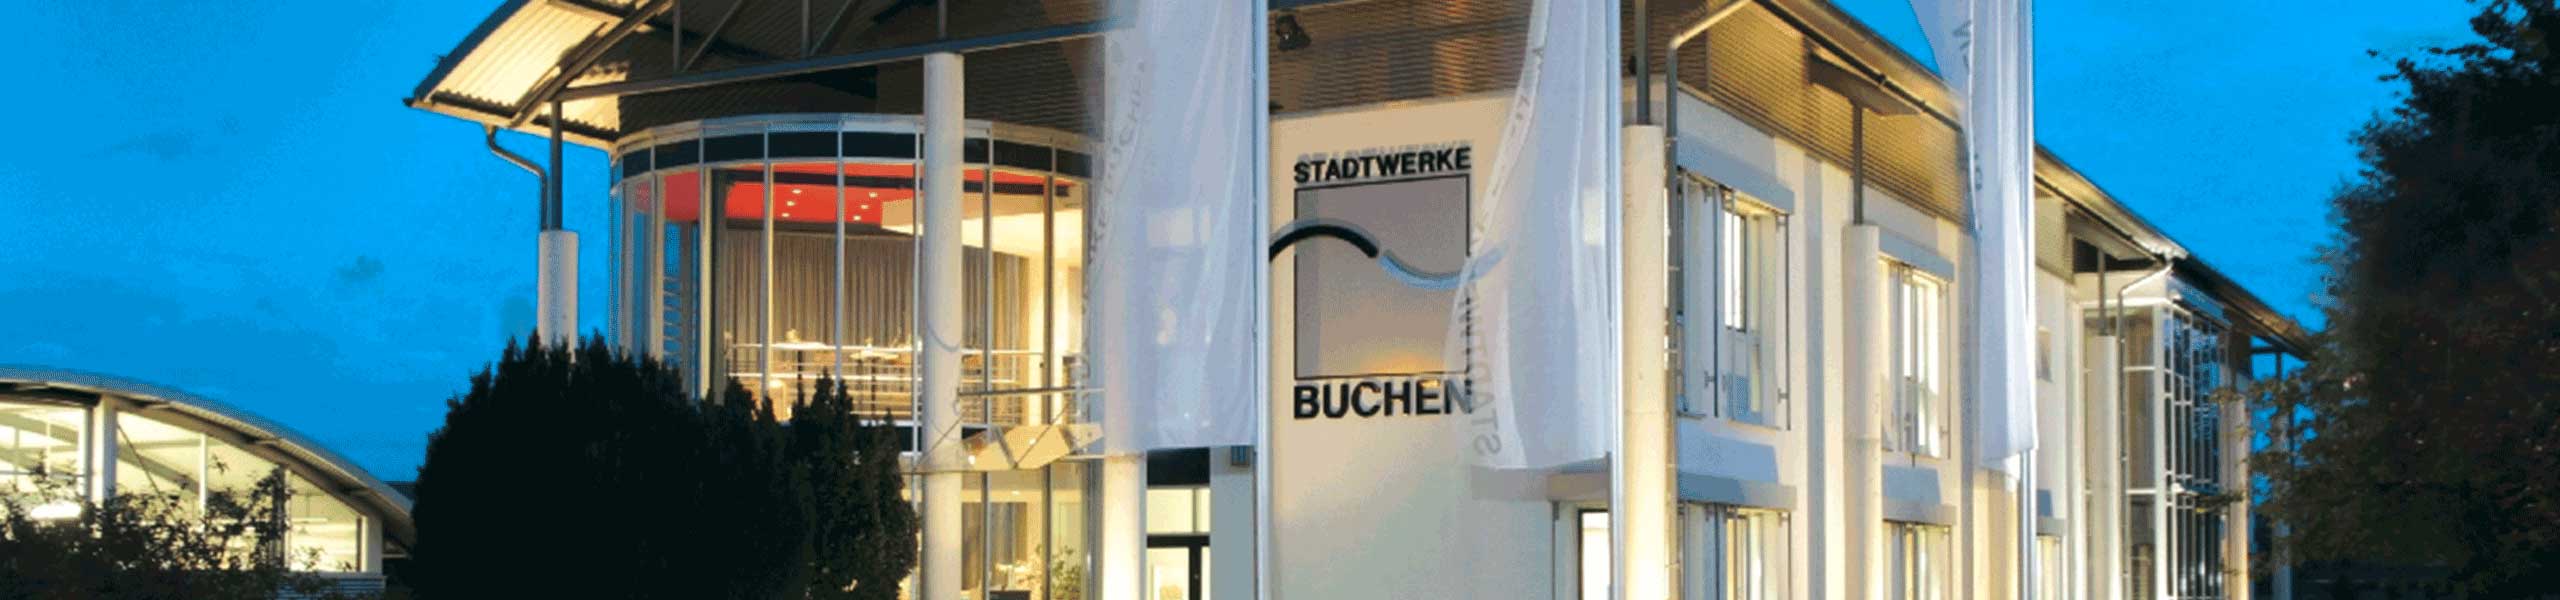 Stadtwerke Buchen GmbH & Co KG - Das Erneuerbare-Wärme-Gesetz